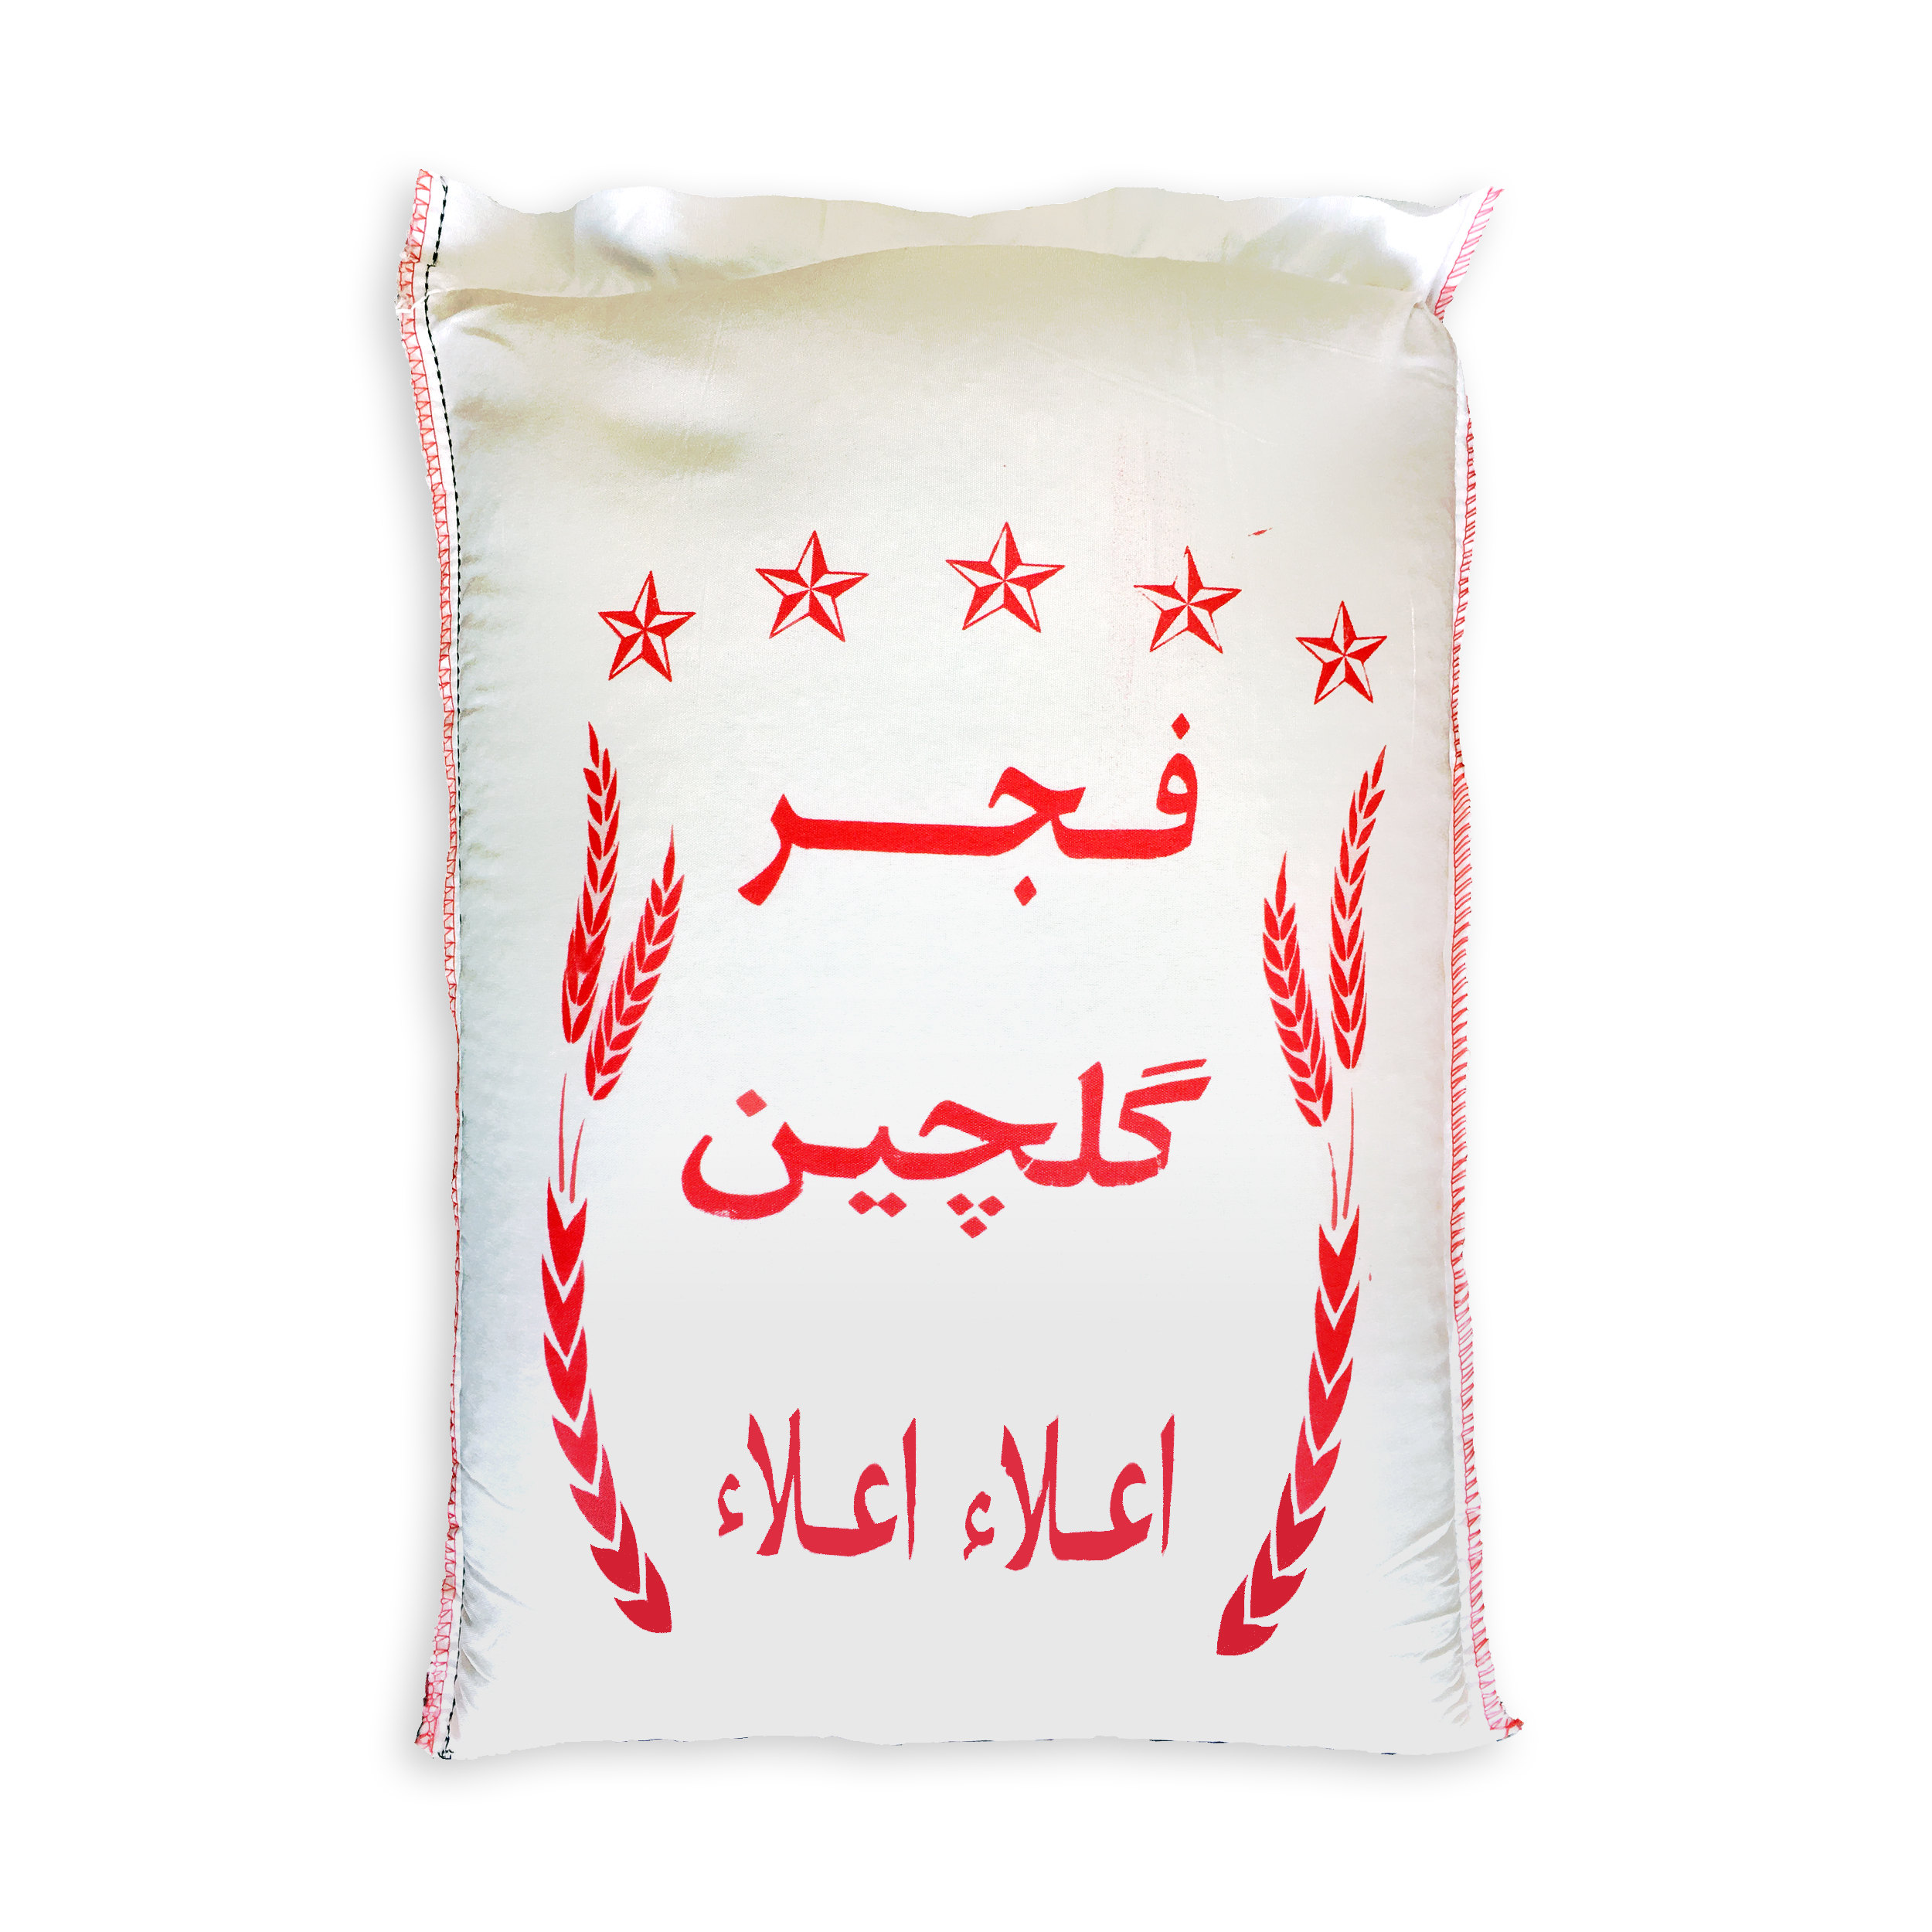 نکته خرید - قیمت روز برنج فجر گلچین گرگان -10 کیلوگرم خرید